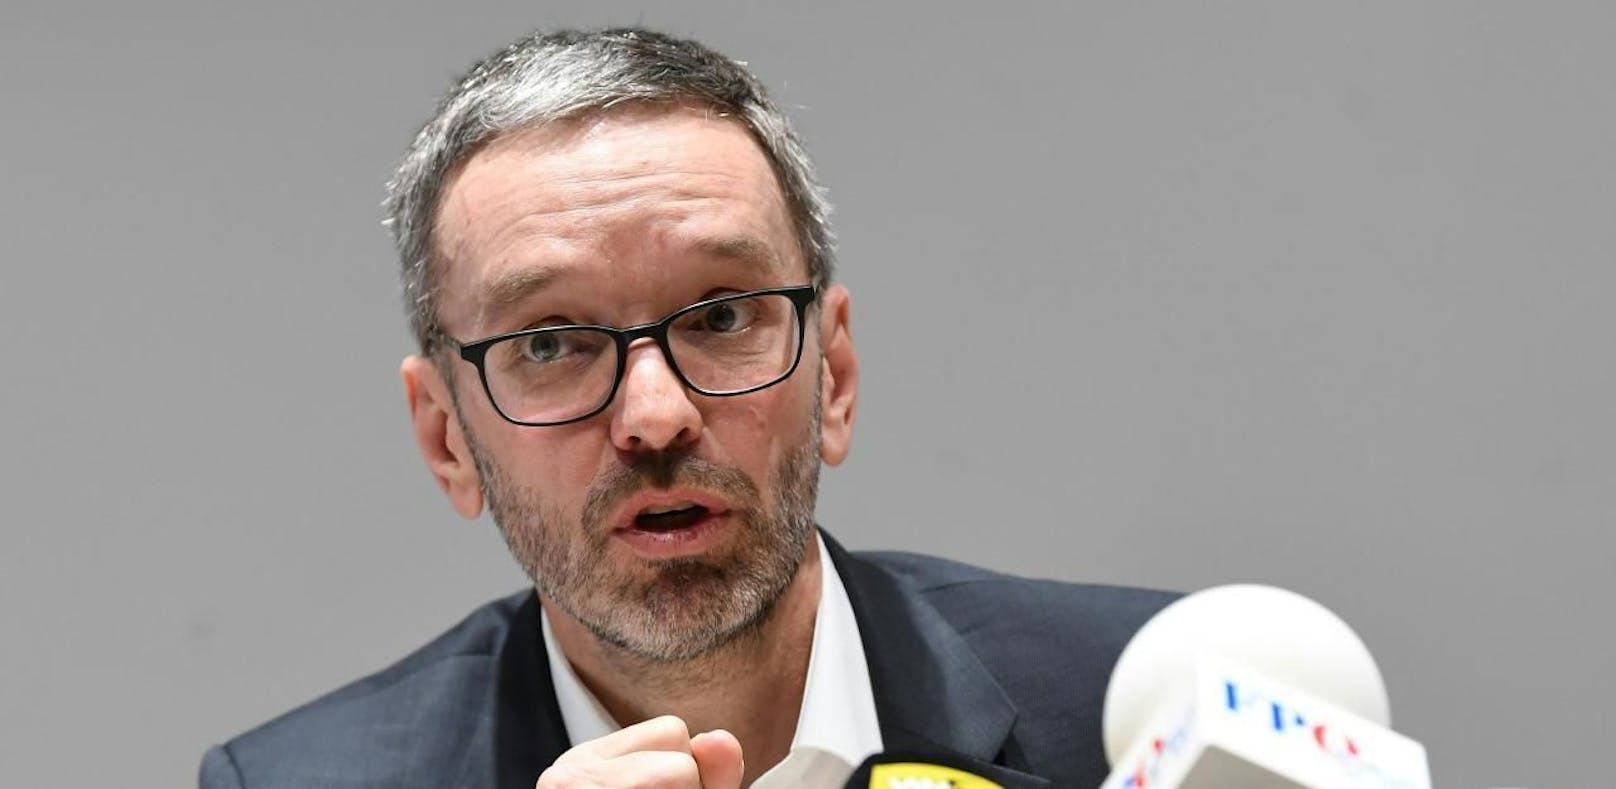 FPÖ-Klubobmann Herbert Kickl hat viele Fragen an die Regierung und fordert Antworten.